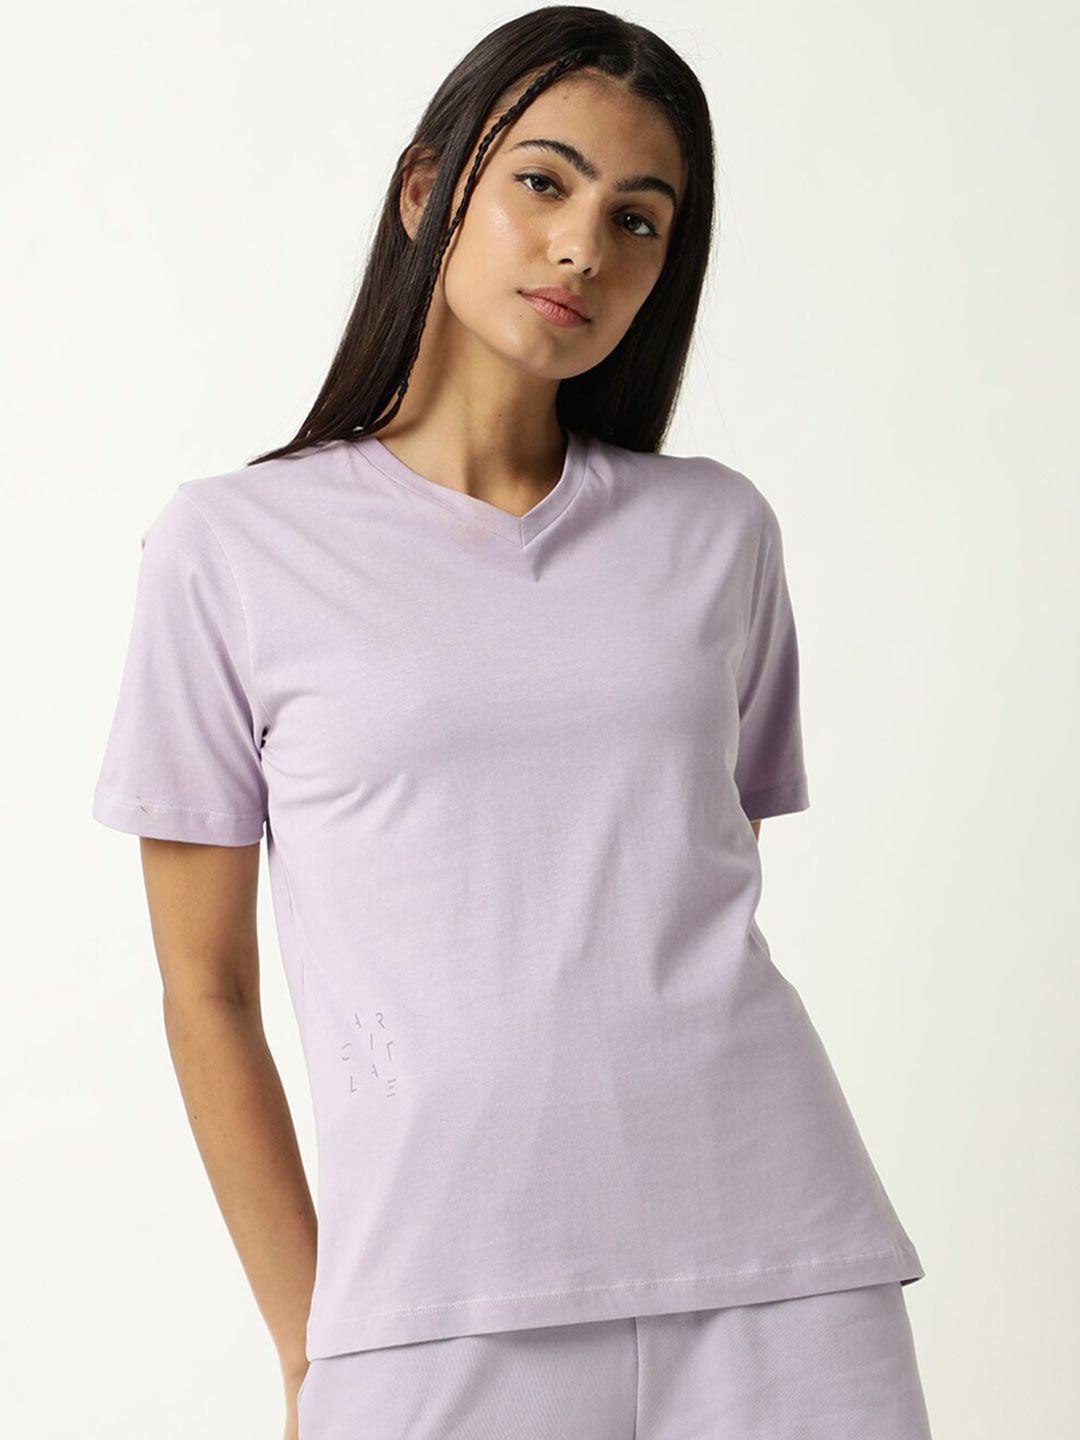 articale women lavender solid v-neck slim fit cotton t-shirt